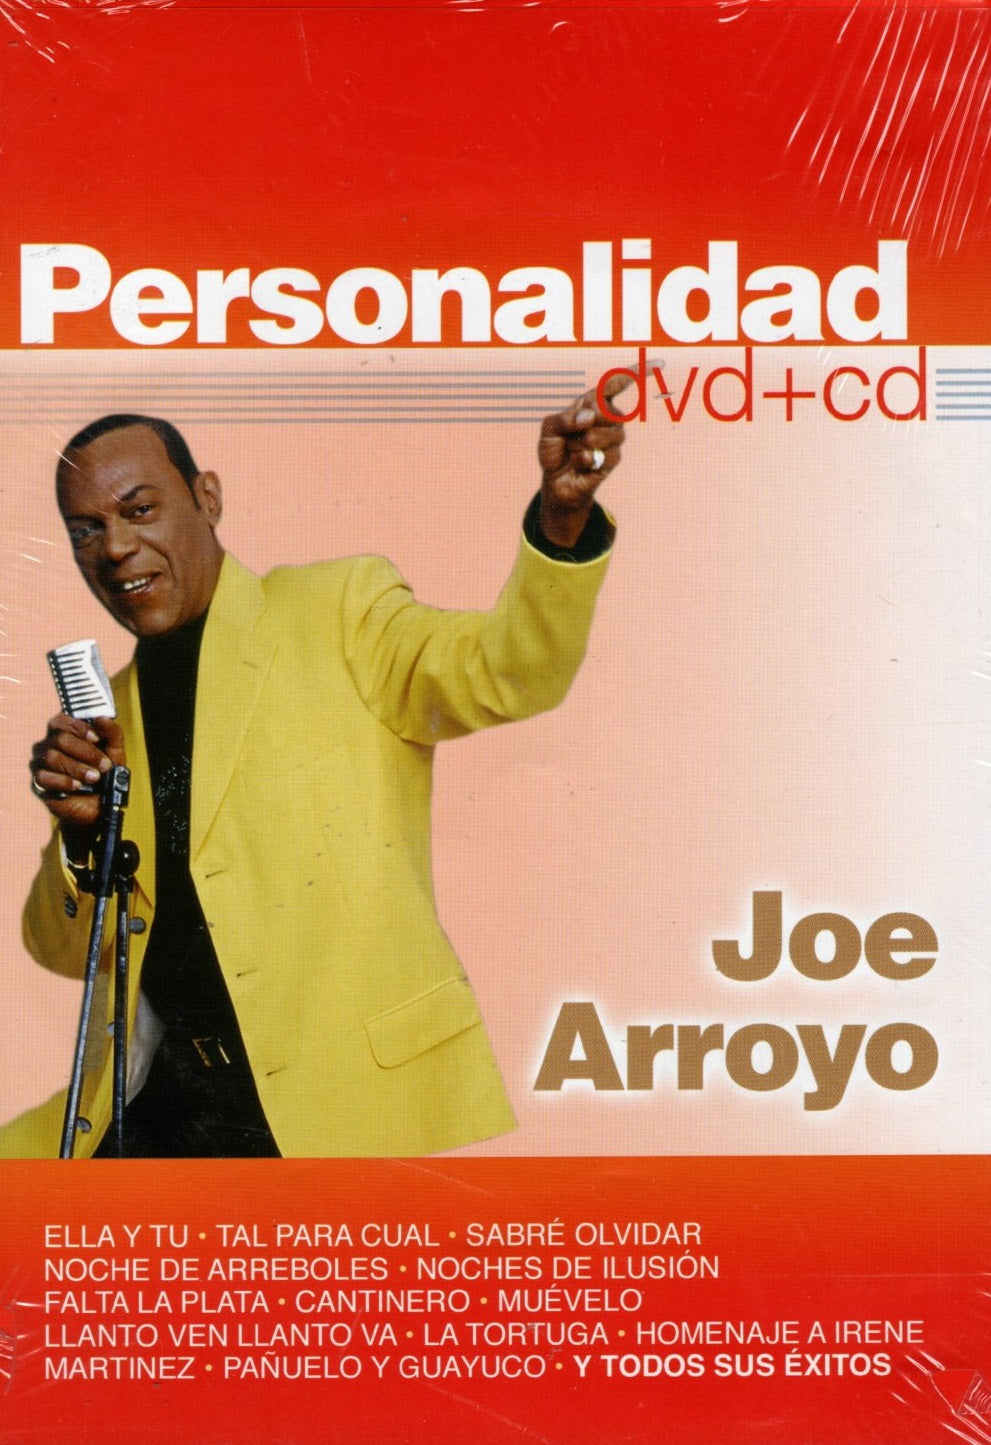 DVD+CD Personalidad - Joe Arroyo